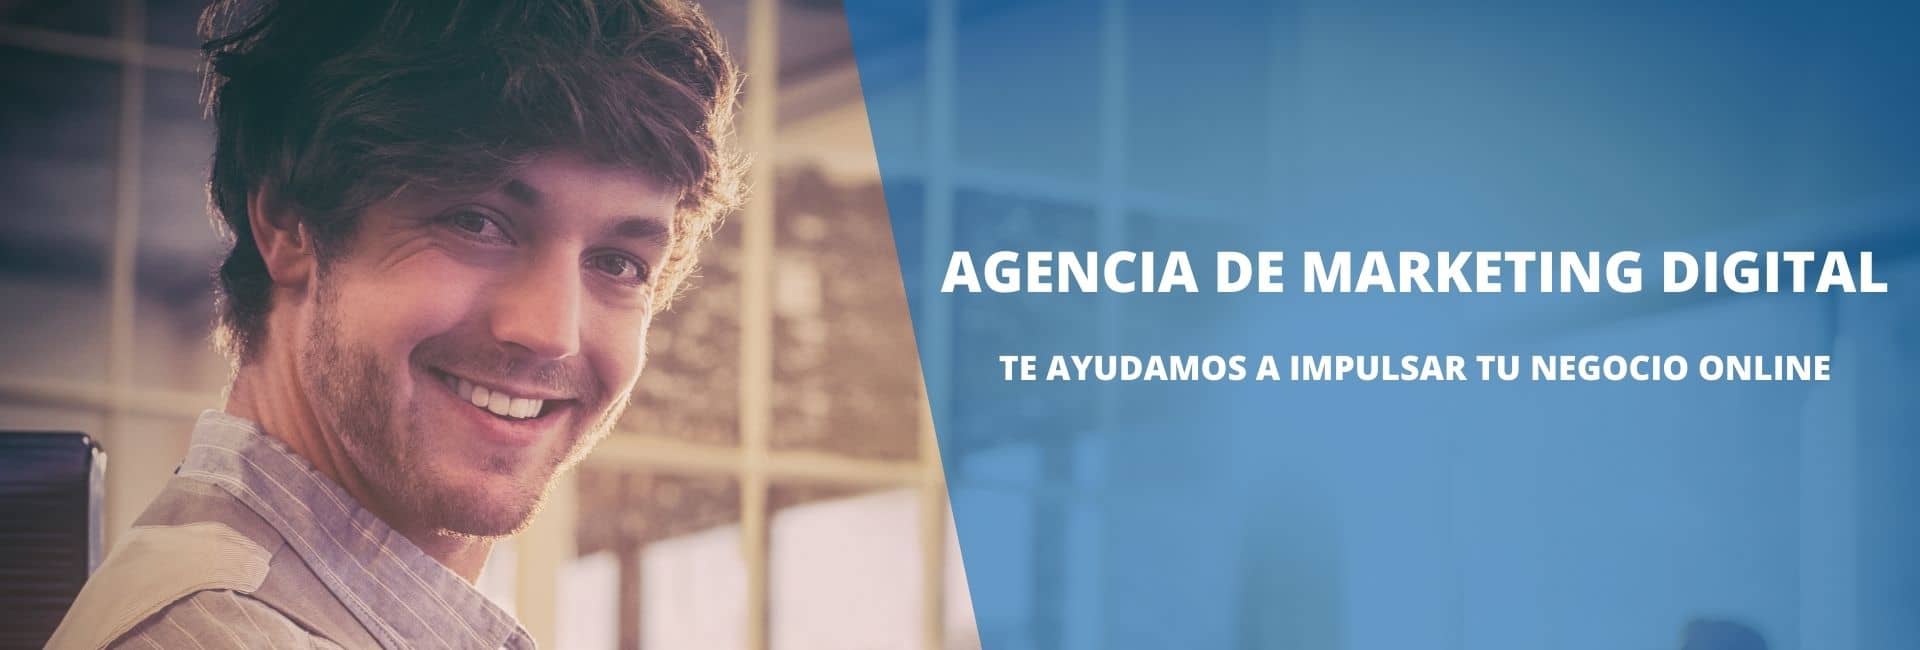 Agencia de Marketing Digital en Murcia